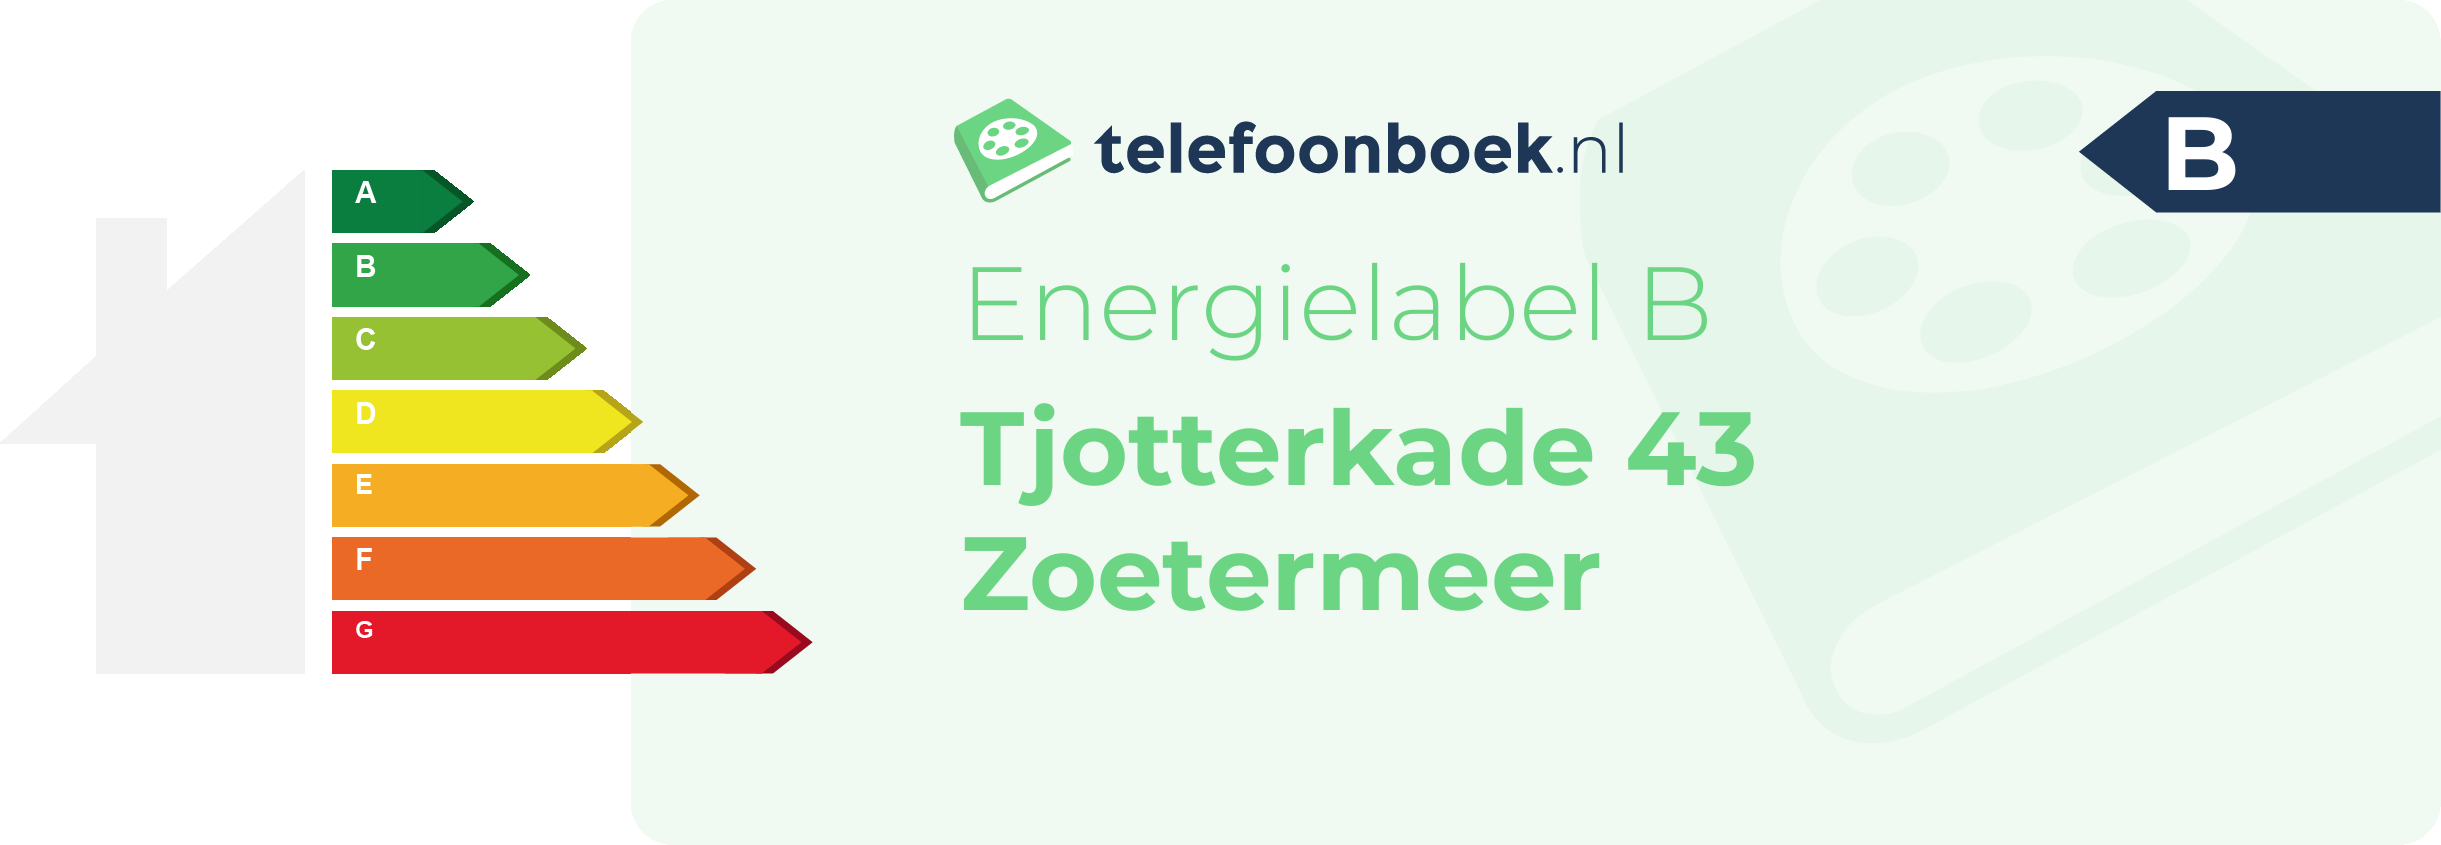 Energielabel Tjotterkade 43 Zoetermeer